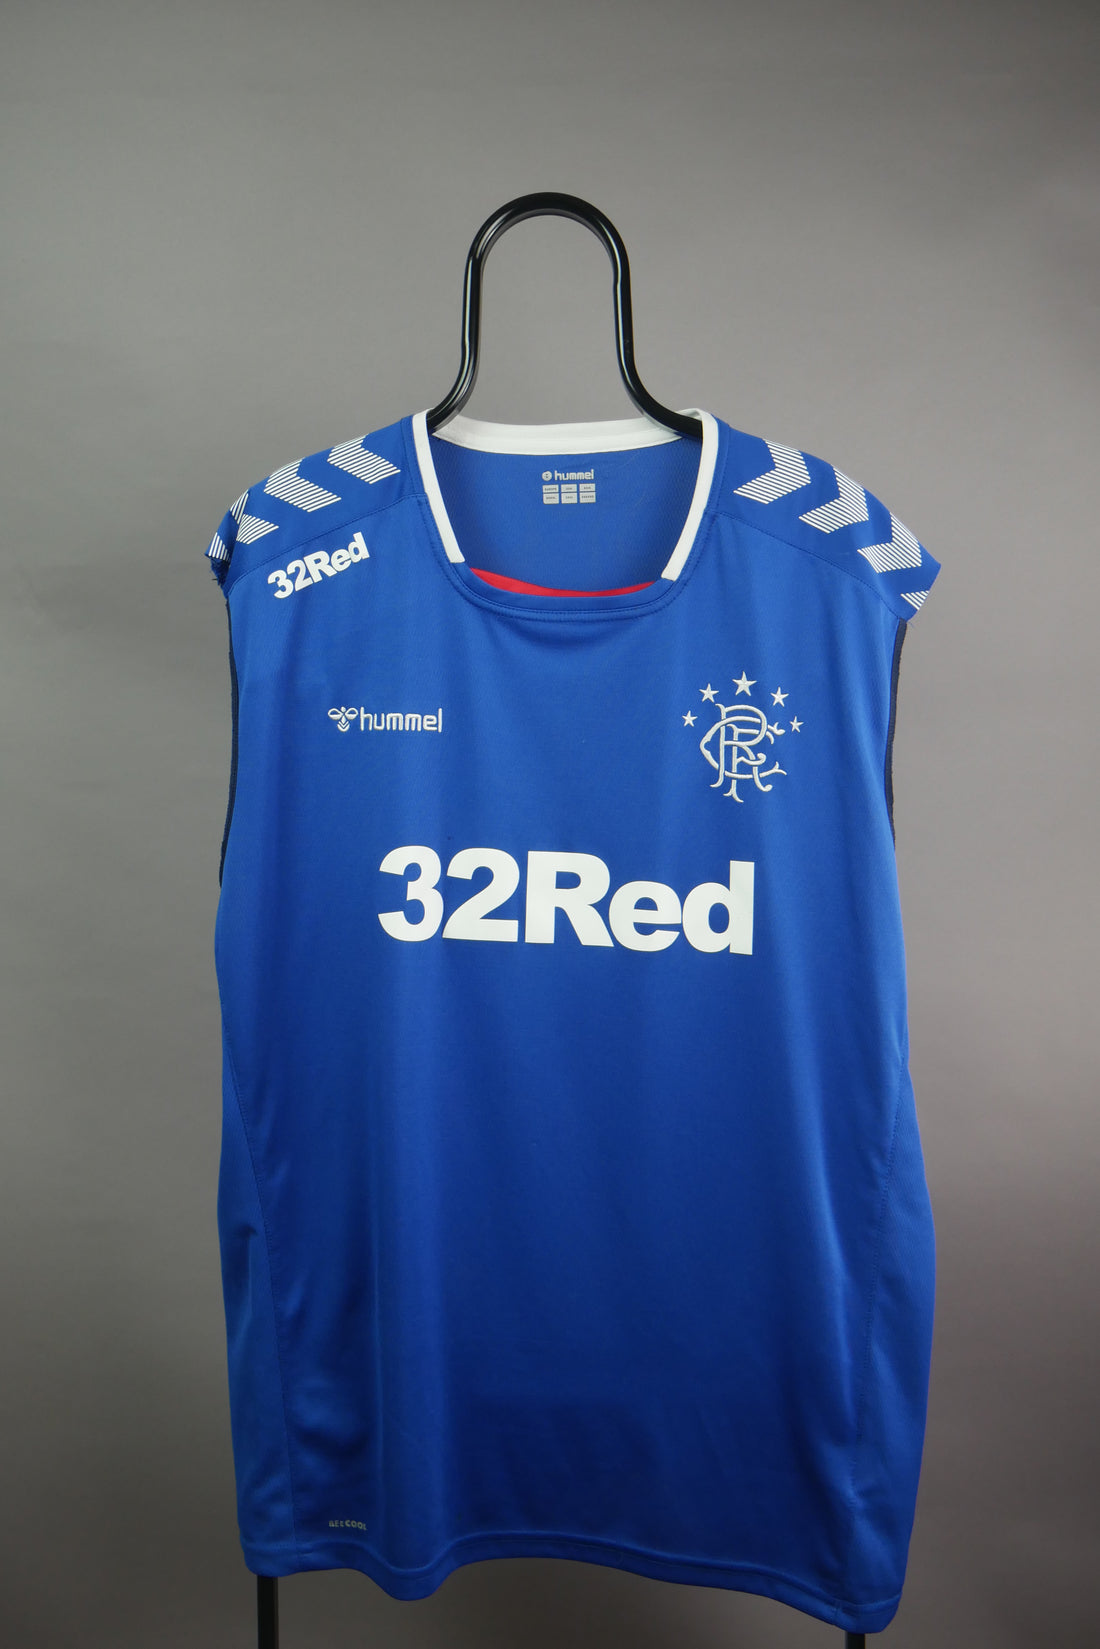 The Glasgow Rangers Football Vest (4XL)